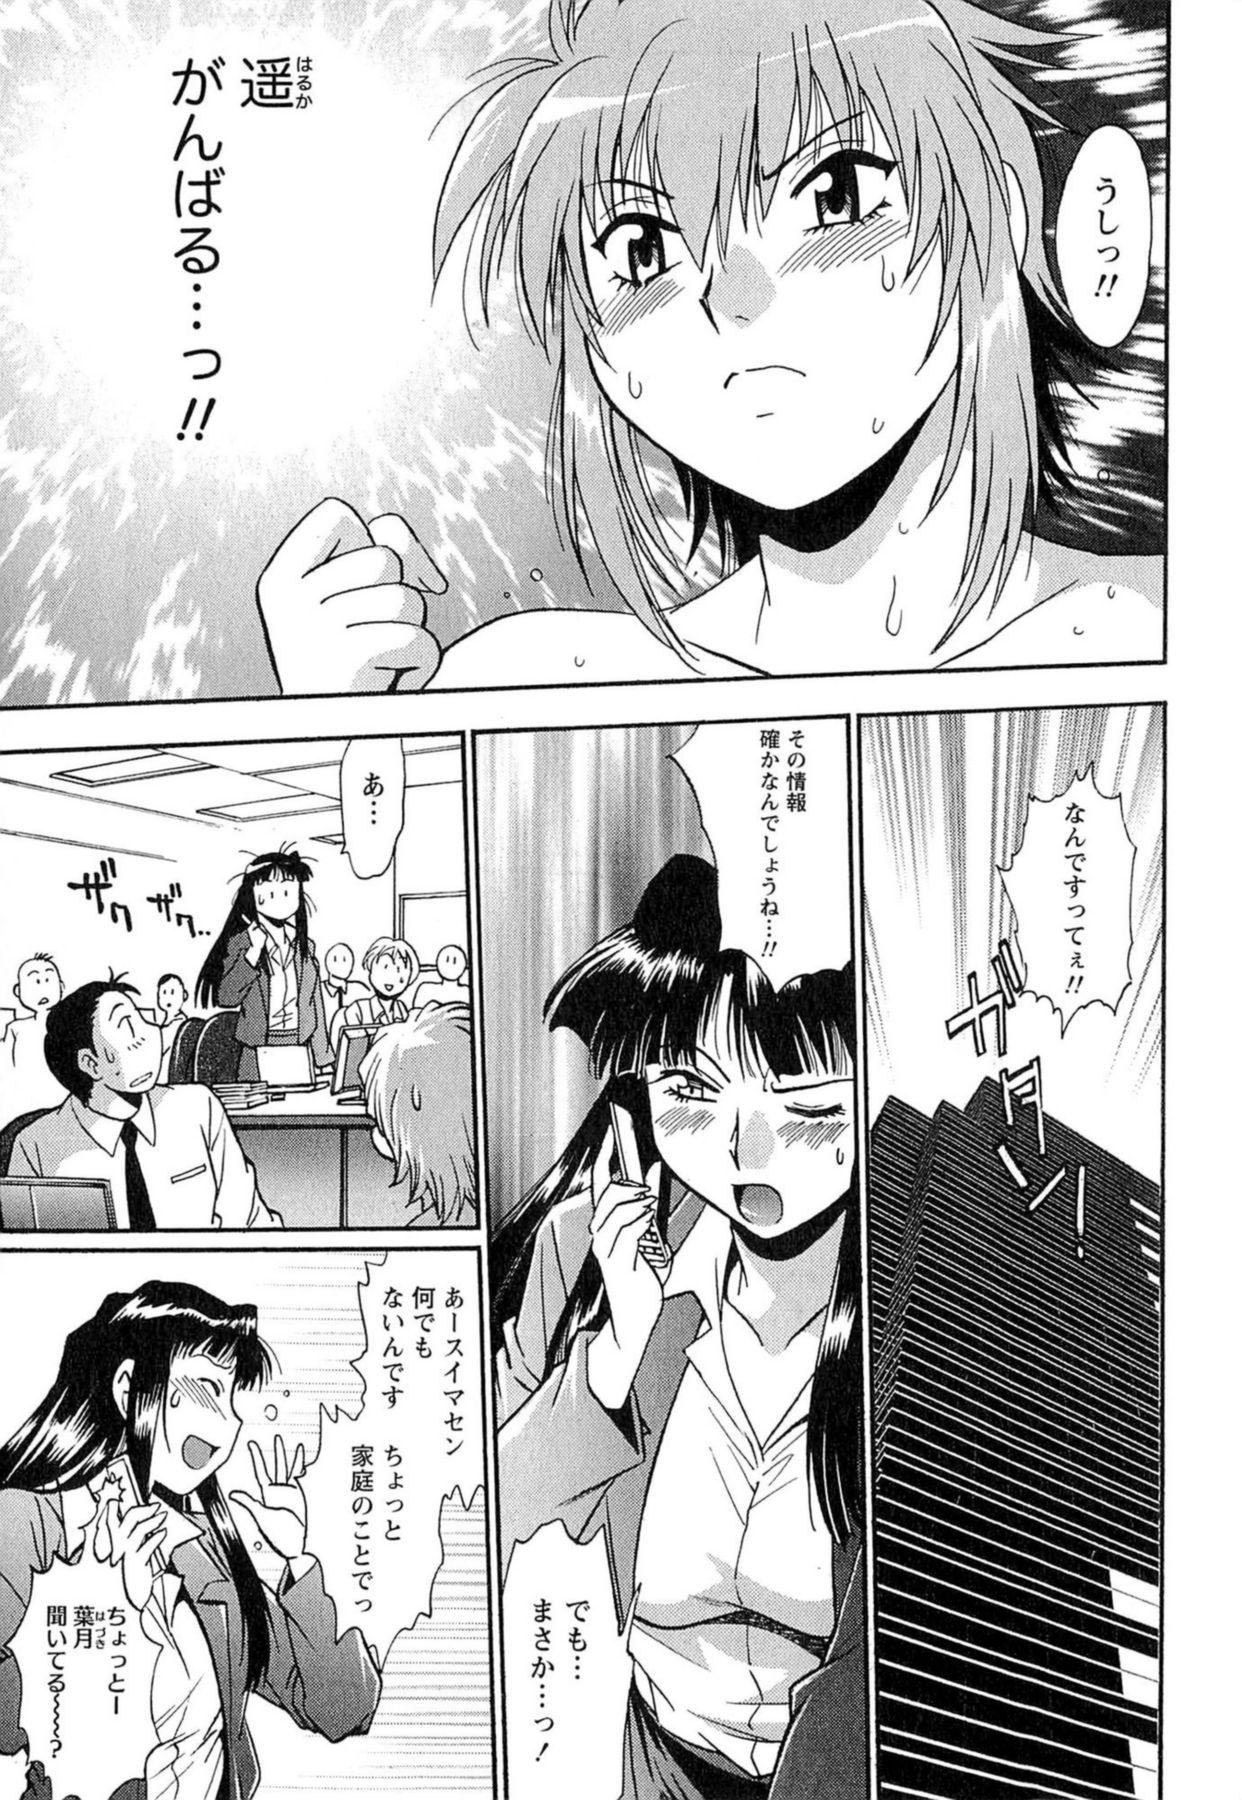 Stepson Kuikomi wo Naoshiteru Hima wa Nai! Vol. 1 Exgf - Page 8